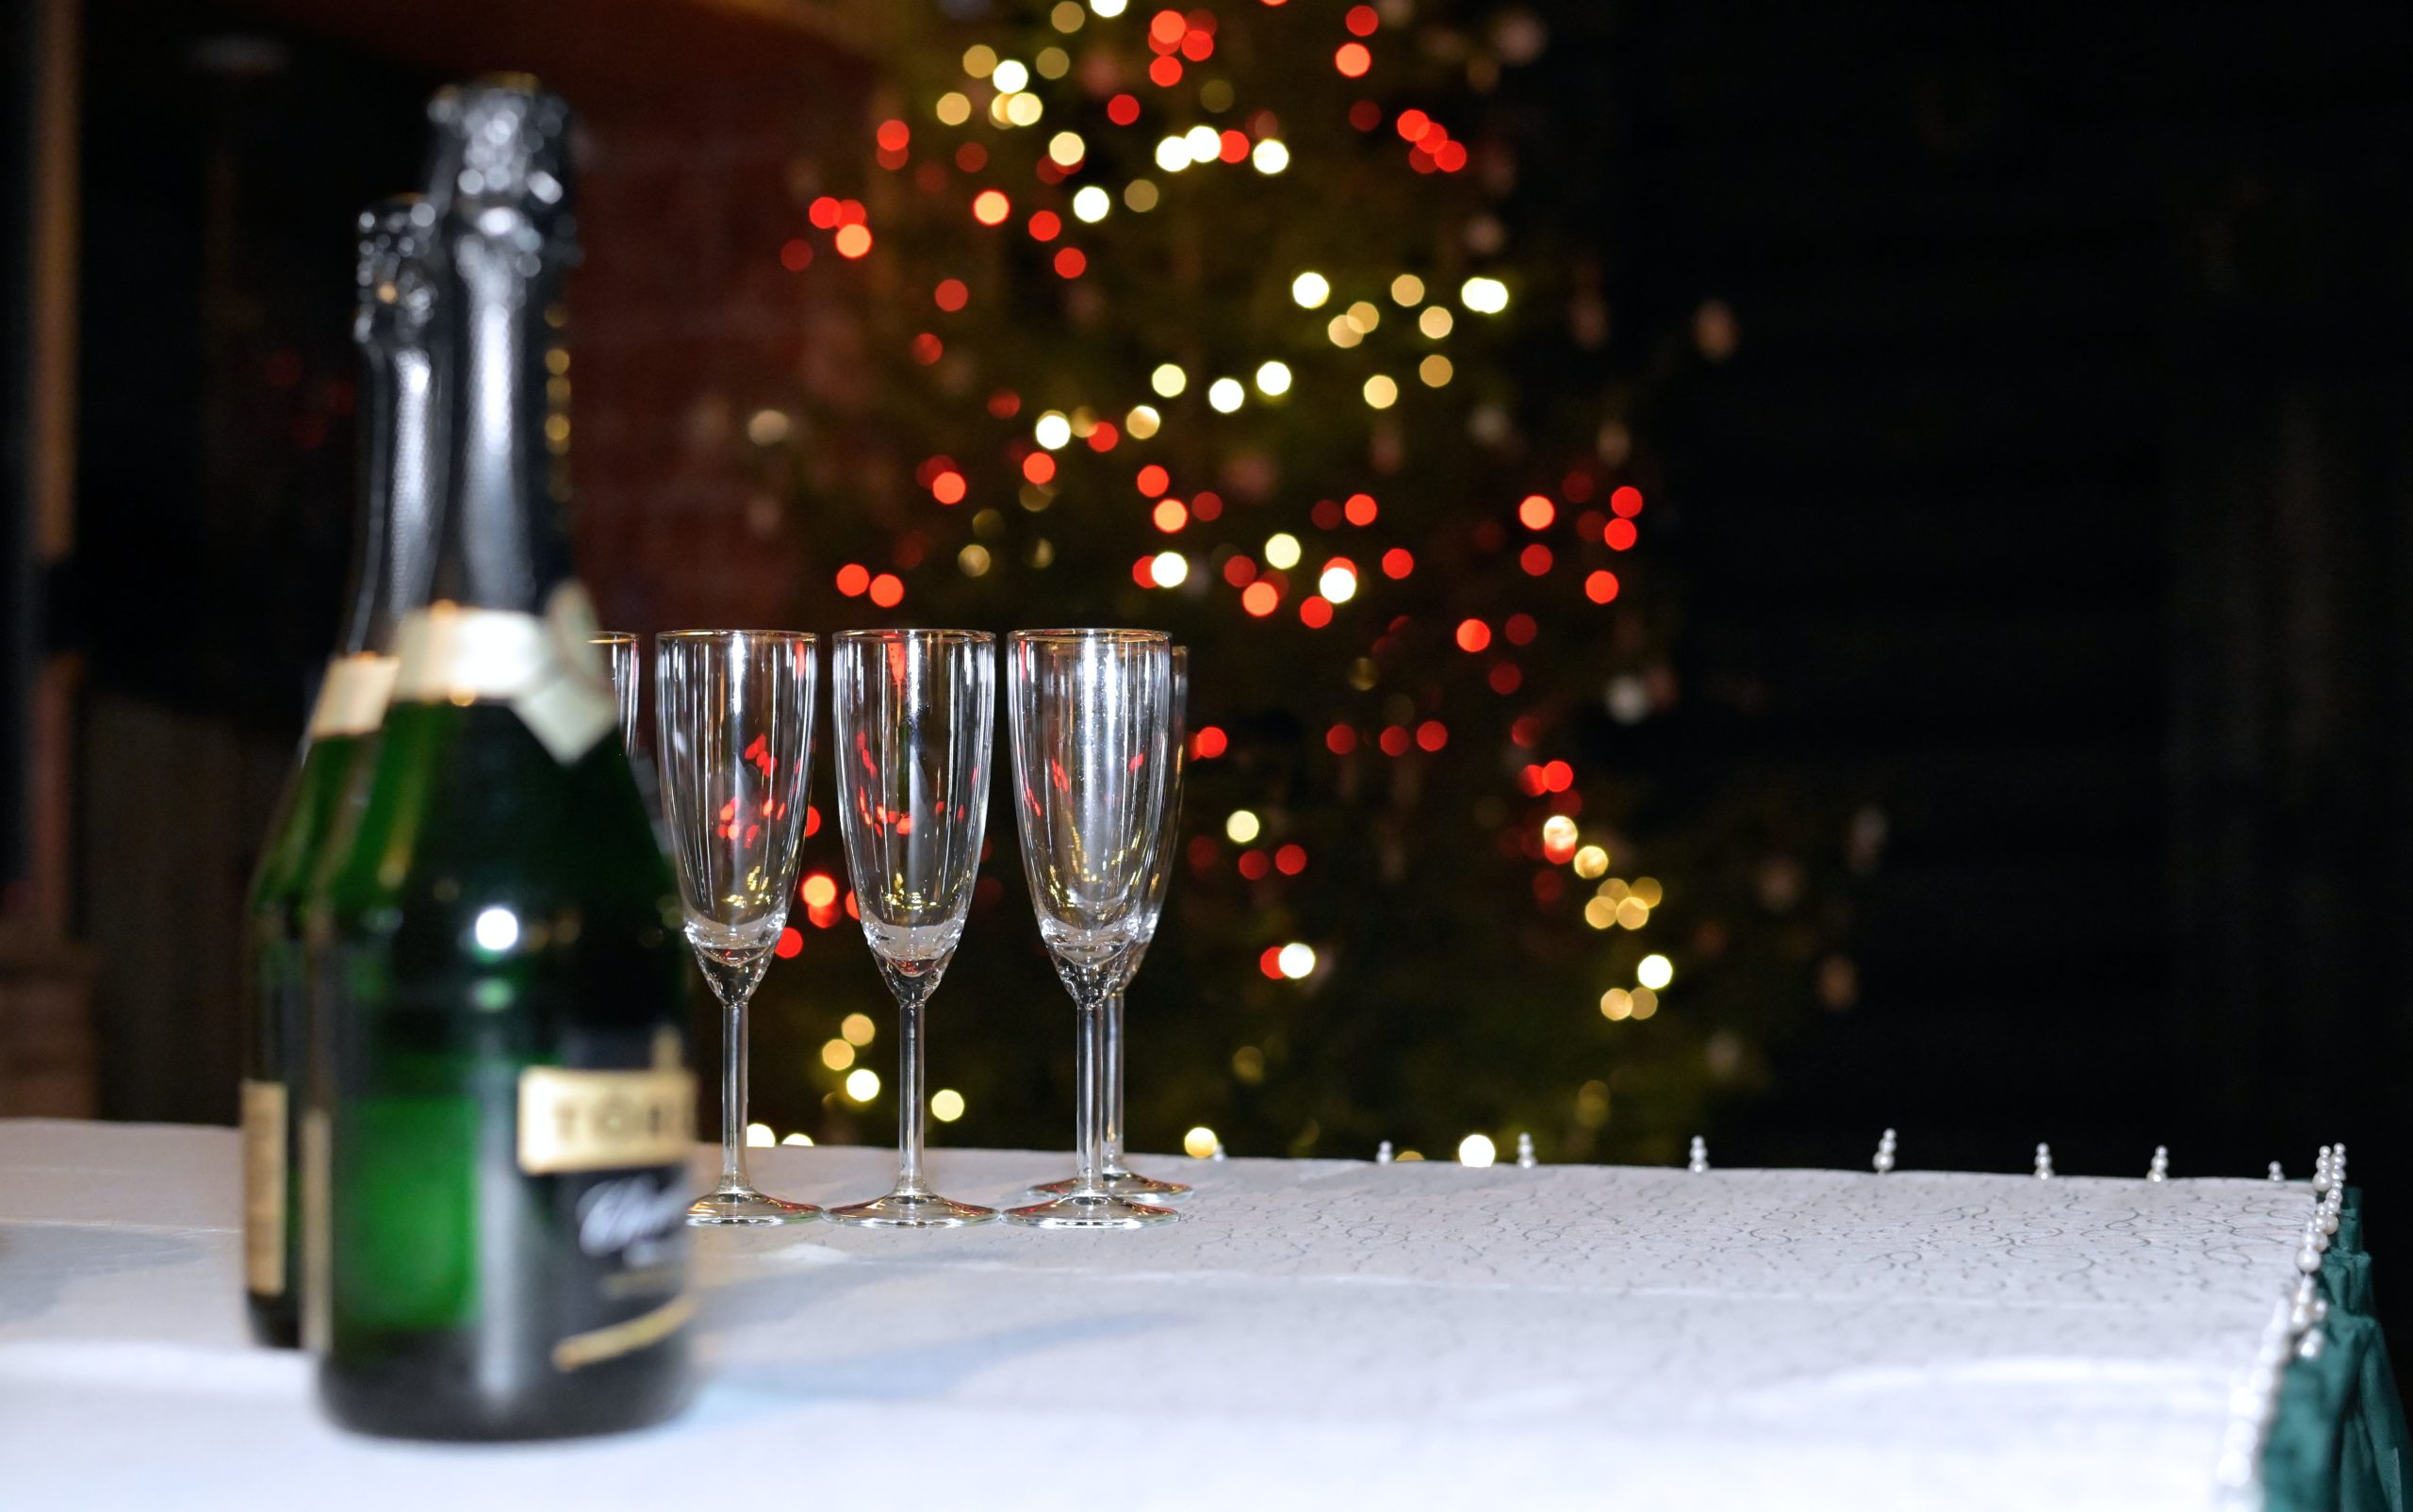 香槟酒和玻璃杯放在圣诞树前